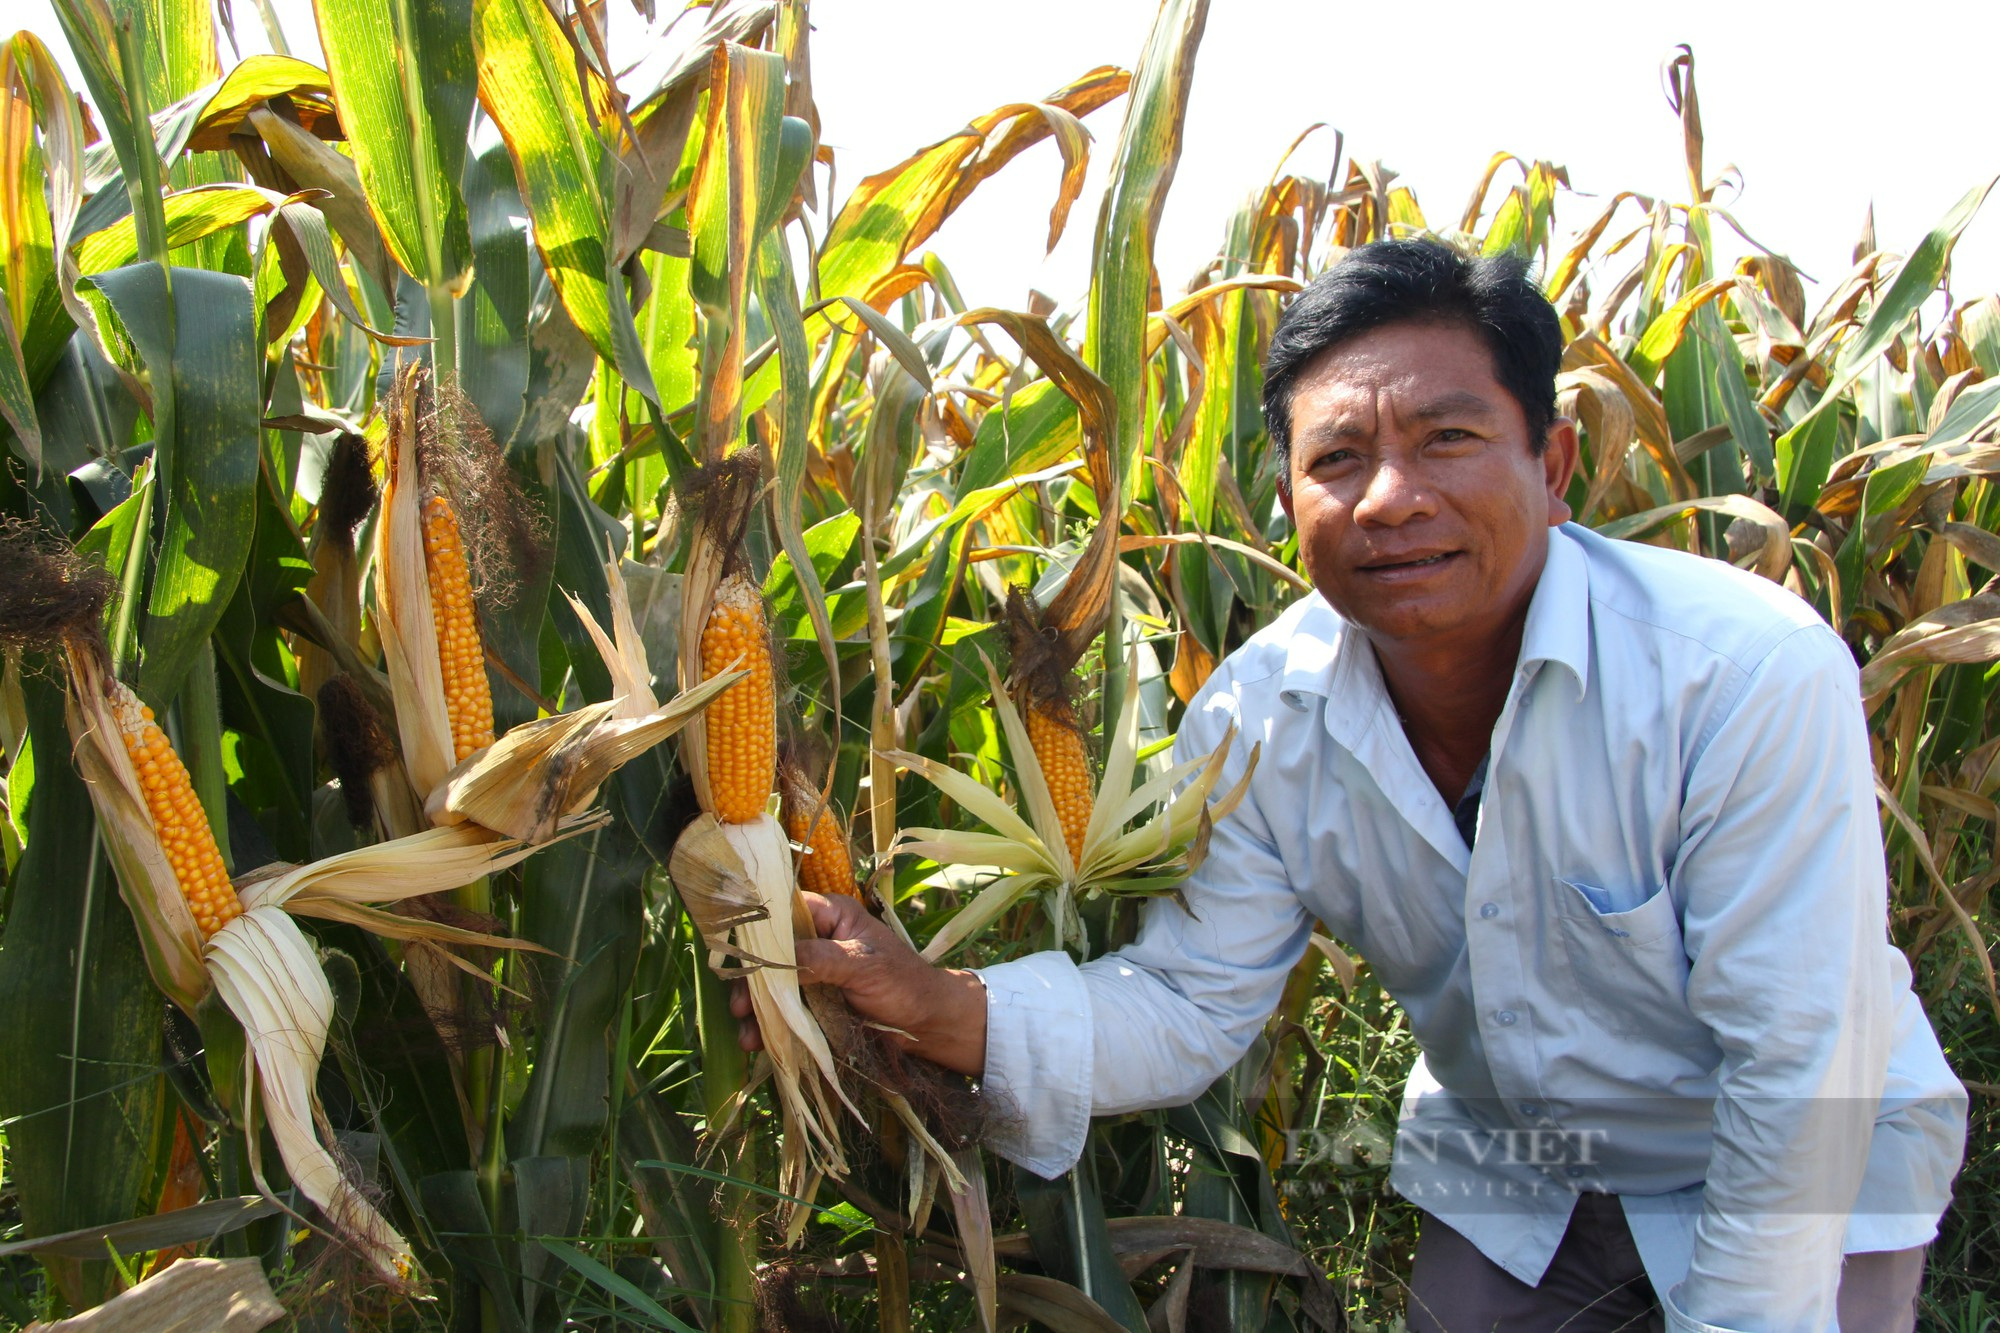 Nông dân Ninh Thuận phấn khởi hái bắp bán giá cao ổn định nhờ liên kết sản xuất với doanh nghiệp - Ảnh 2.